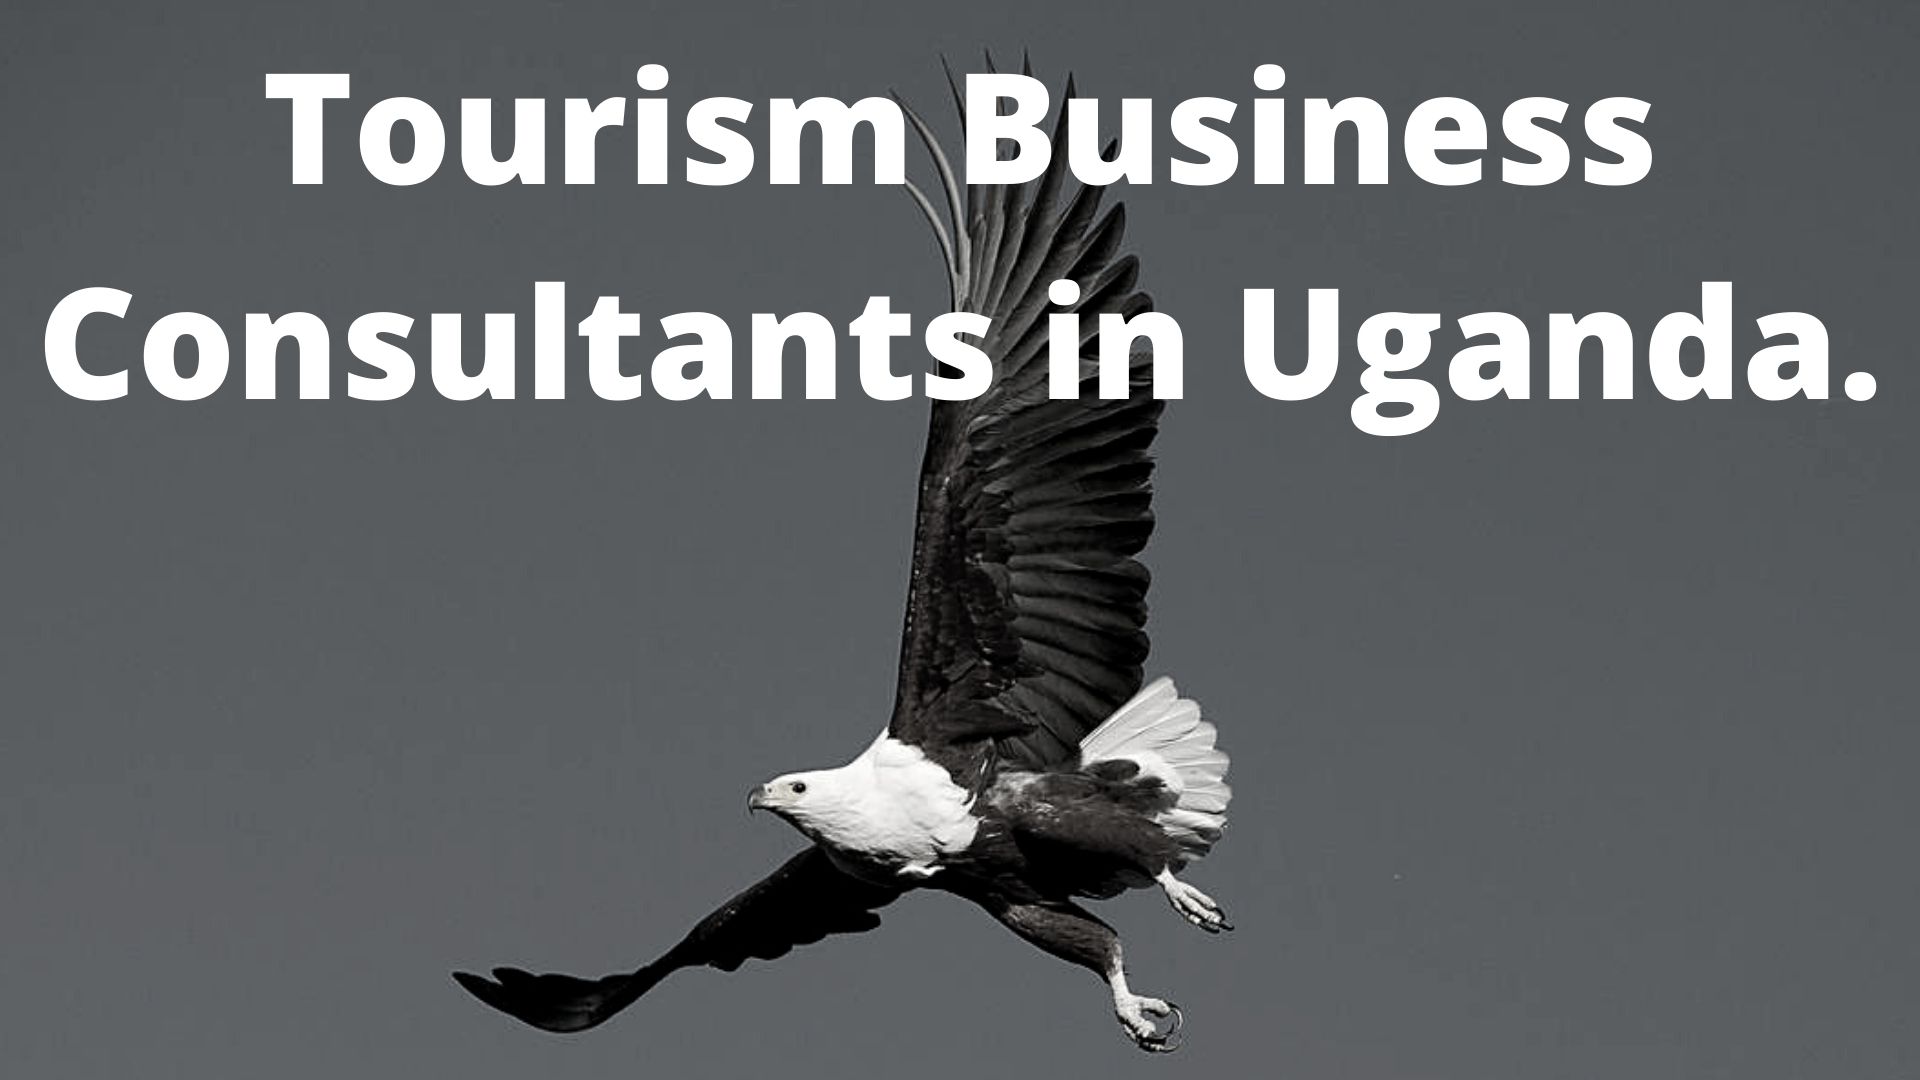 Tourism Business Consultants In Uganda